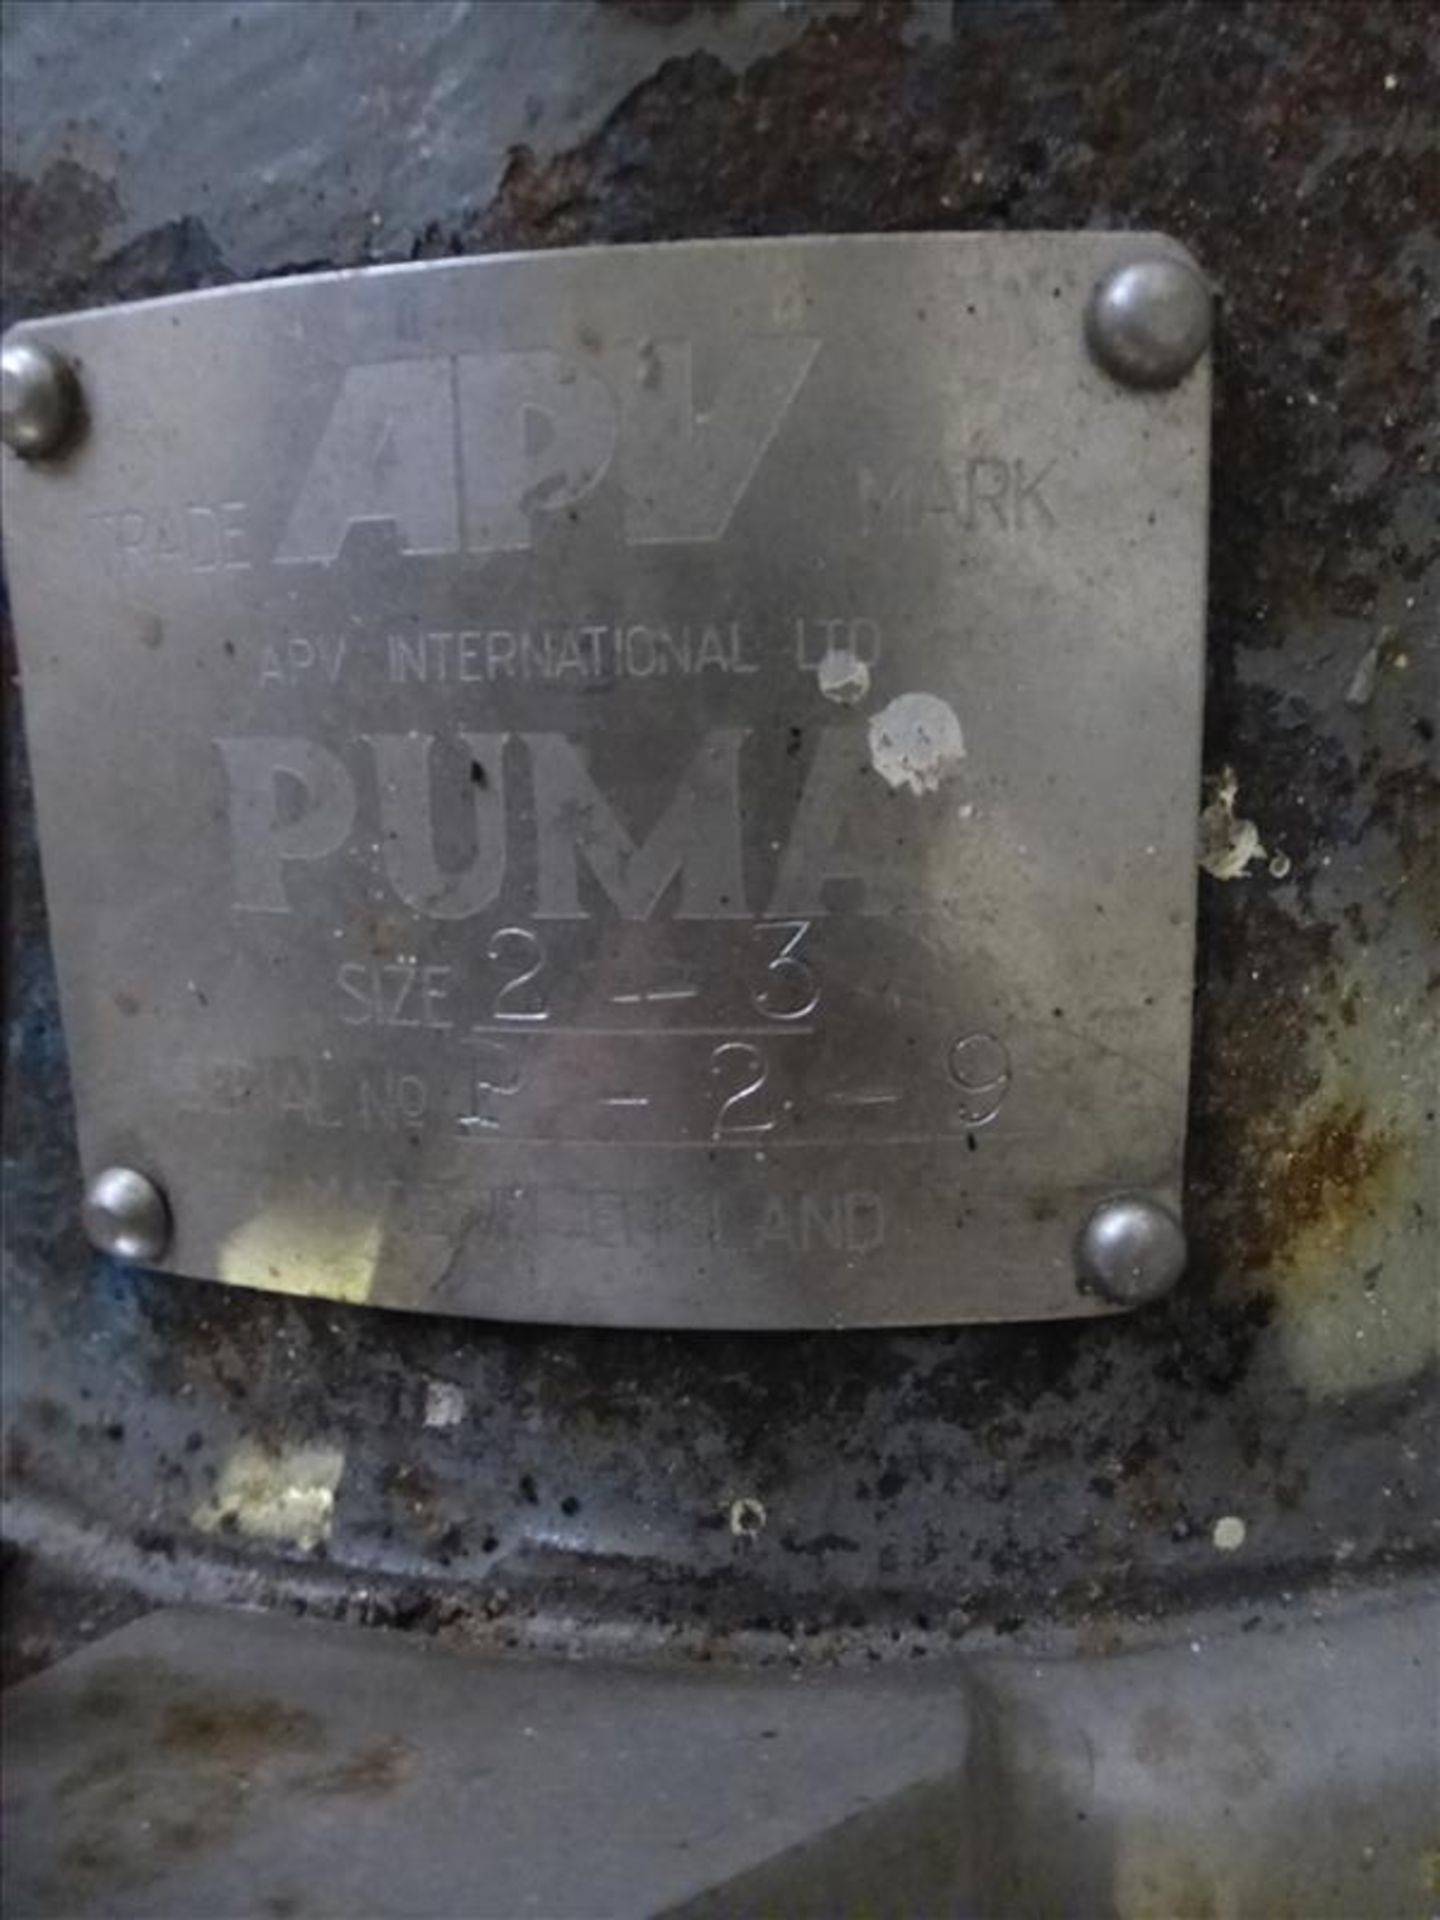 APV s/s centrifugal pump, mod. Puma, size 2 - 3, ser. no. P-2-9, 3 h.p. - Image 2 of 3